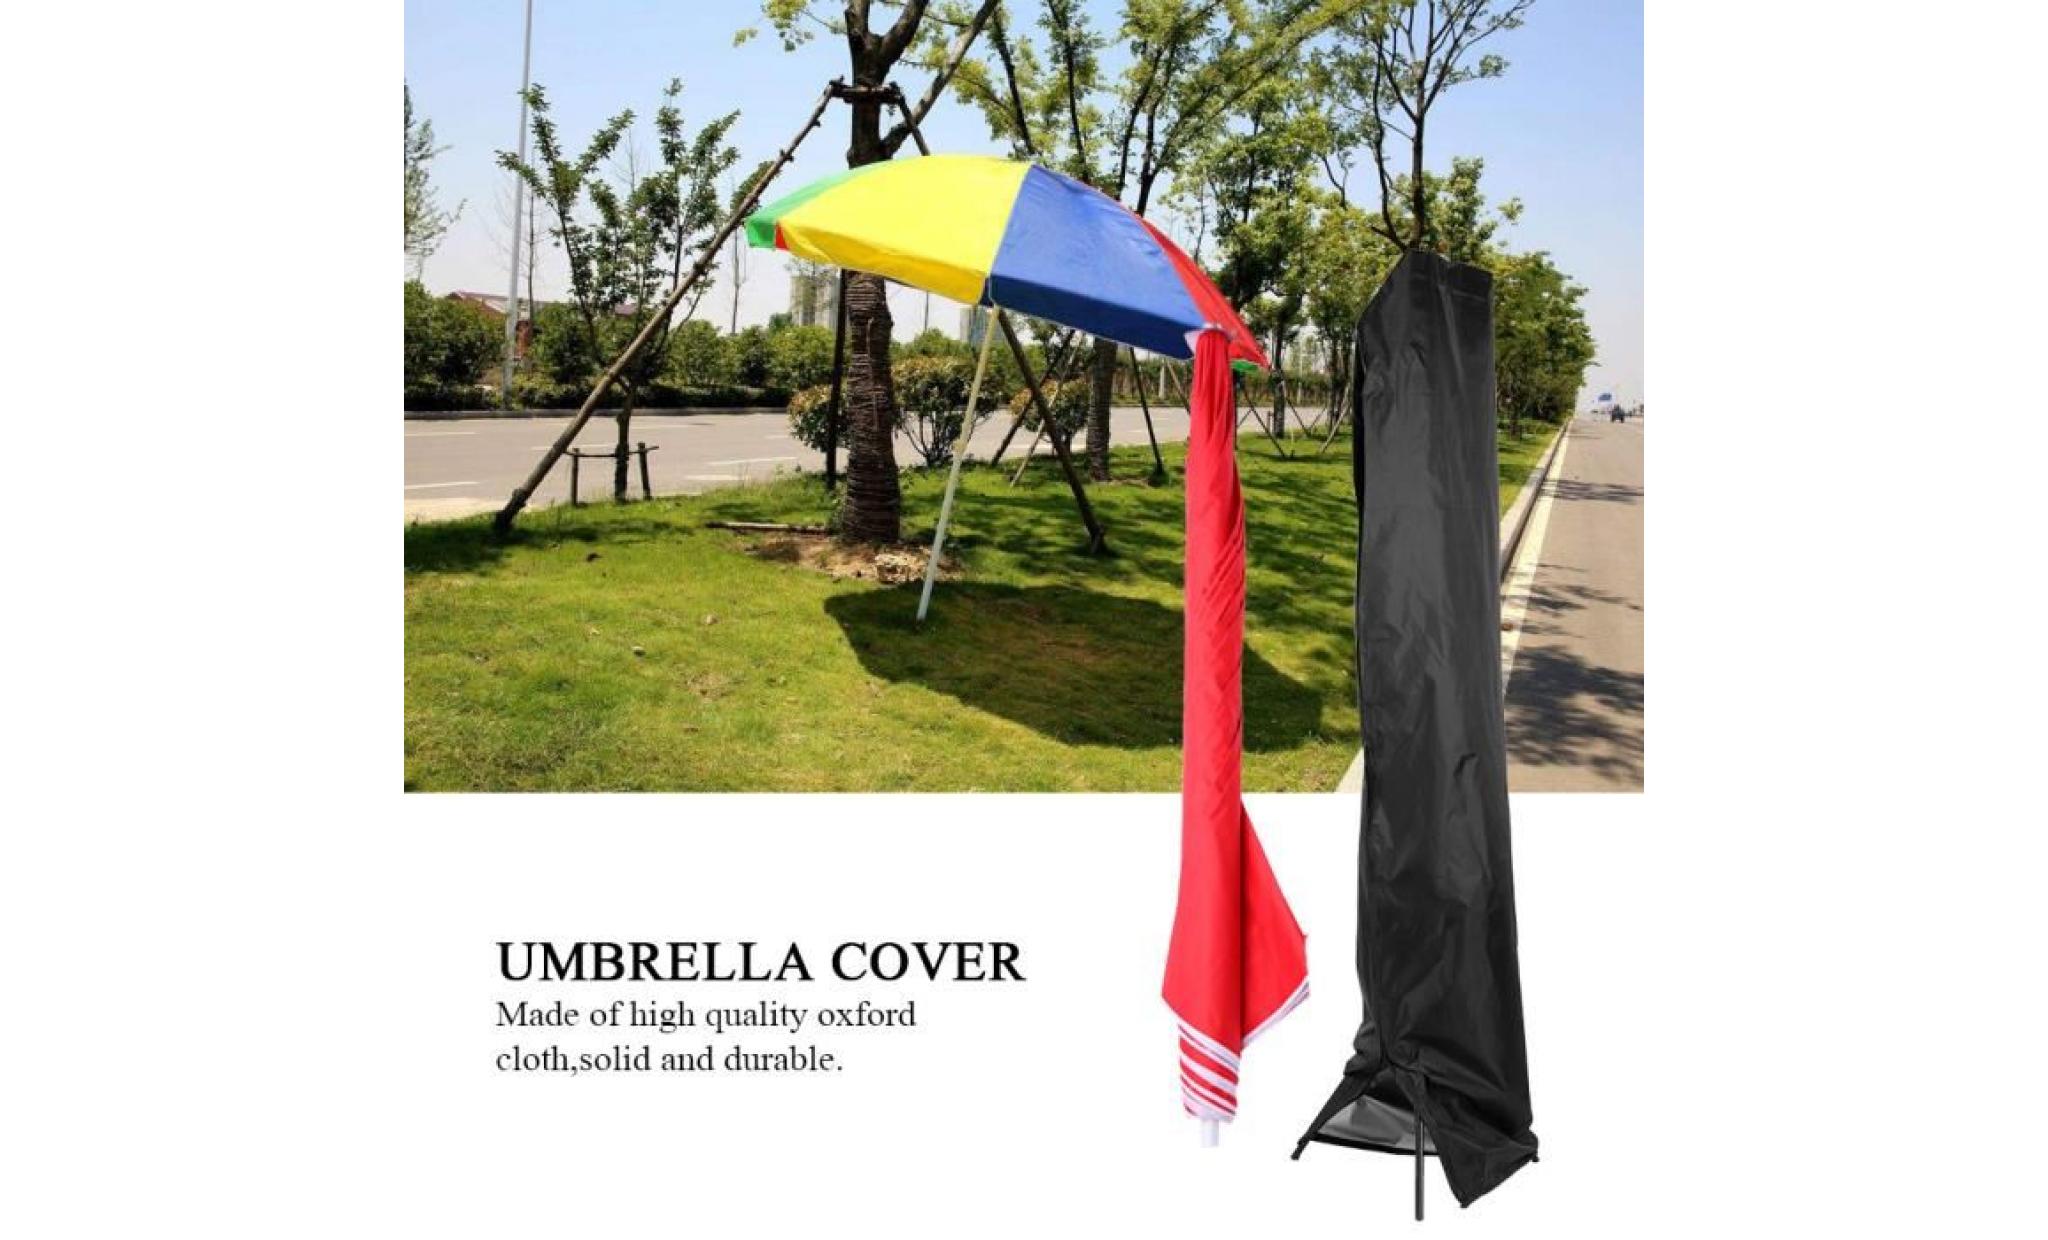 housse de parapluie tissu oxford anti rouille pour parapluie antirouille（280cm: 30 * 81 * 45cm）